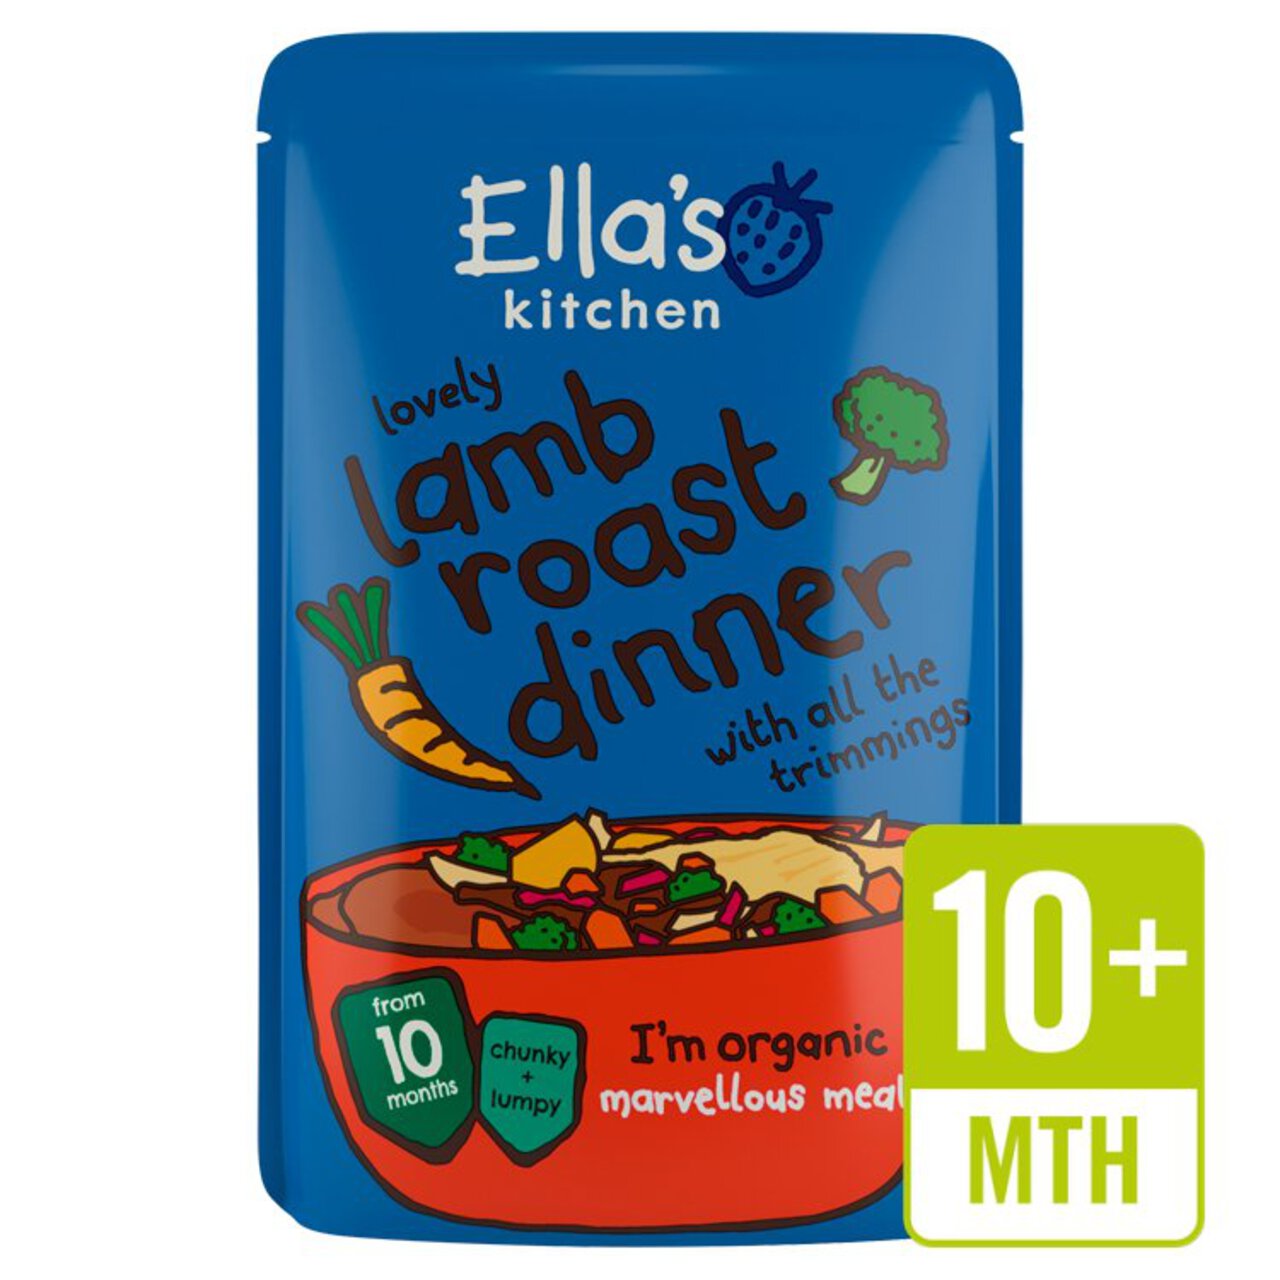 Ella's Kitchen Lamb Roast Dinner Baby Food Pouch 10+ Months 190g